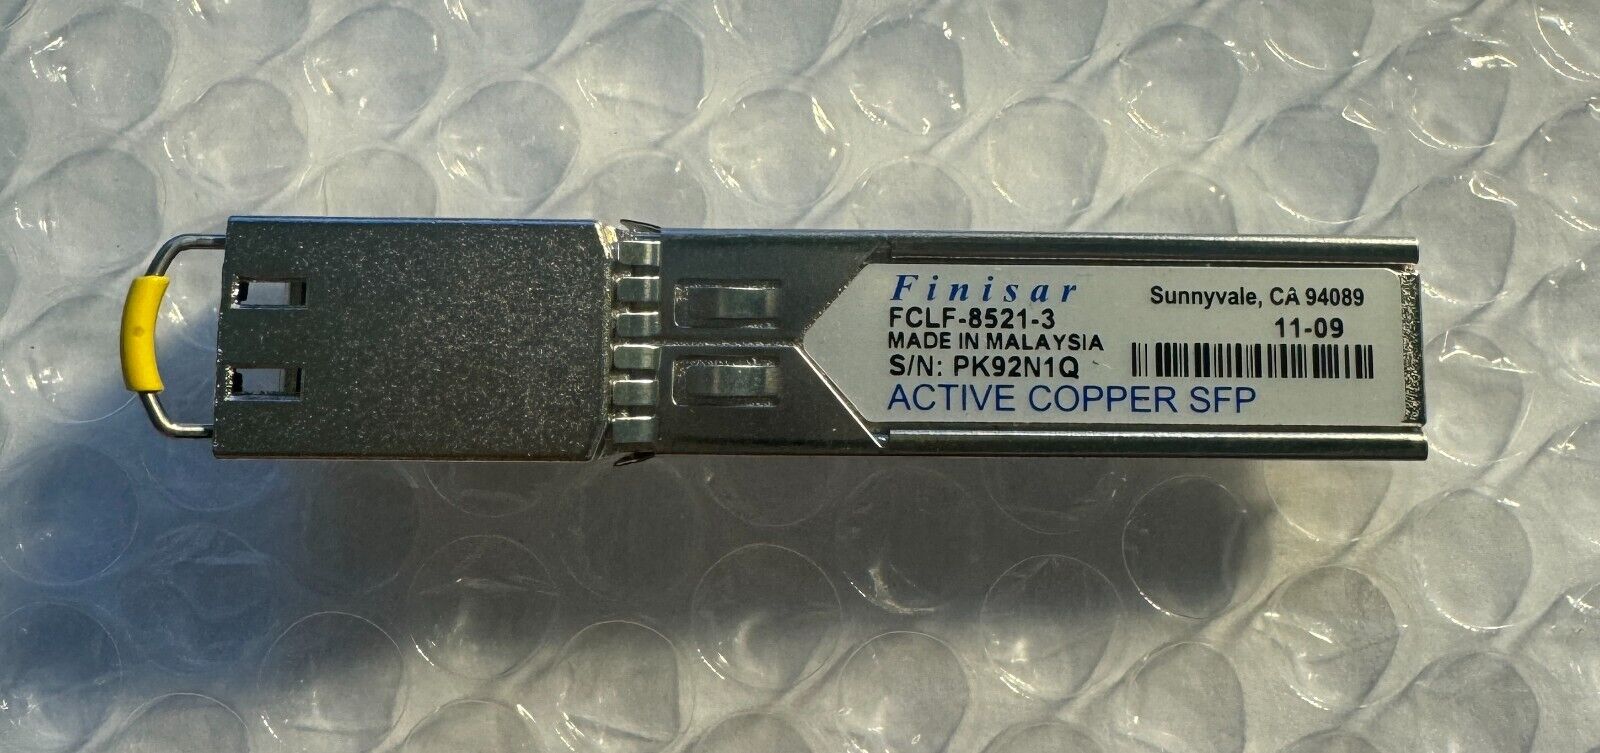 Finisar FCLF-8521-3  SFP transceiver, 